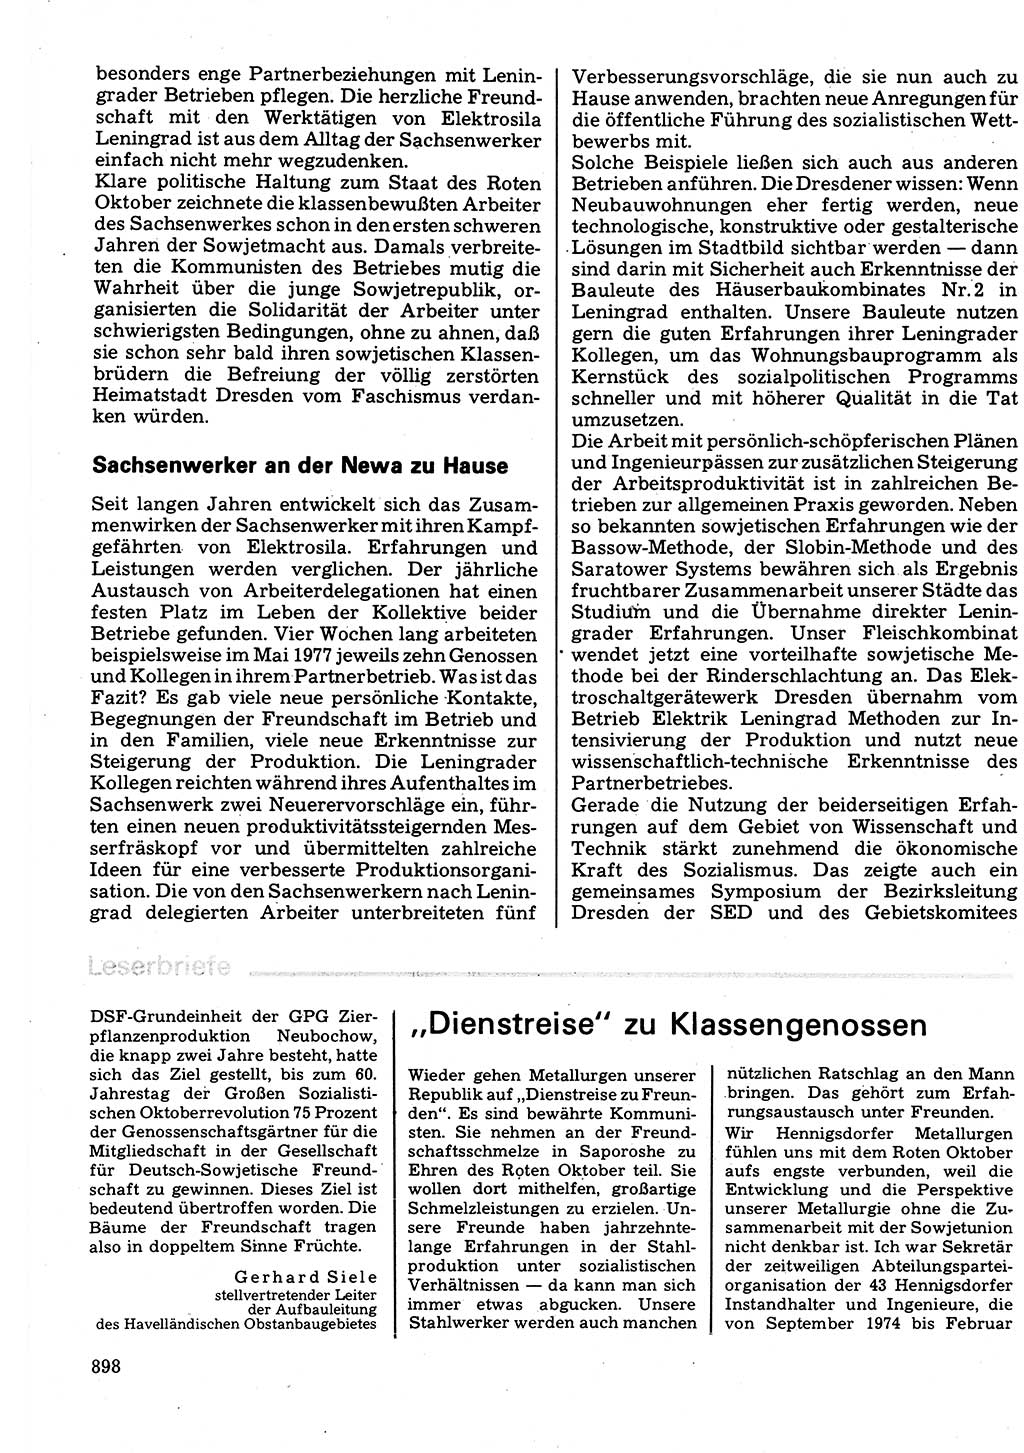 Neuer Weg (NW), Organ des Zentralkomitees (ZK) der SED (Sozialistische Einheitspartei Deutschlands) für Fragen des Parteilebens, 32. Jahrgang [Deutsche Demokratische Republik (DDR)] 1977, Seite 898 (NW ZK SED DDR 1977, S. 898)